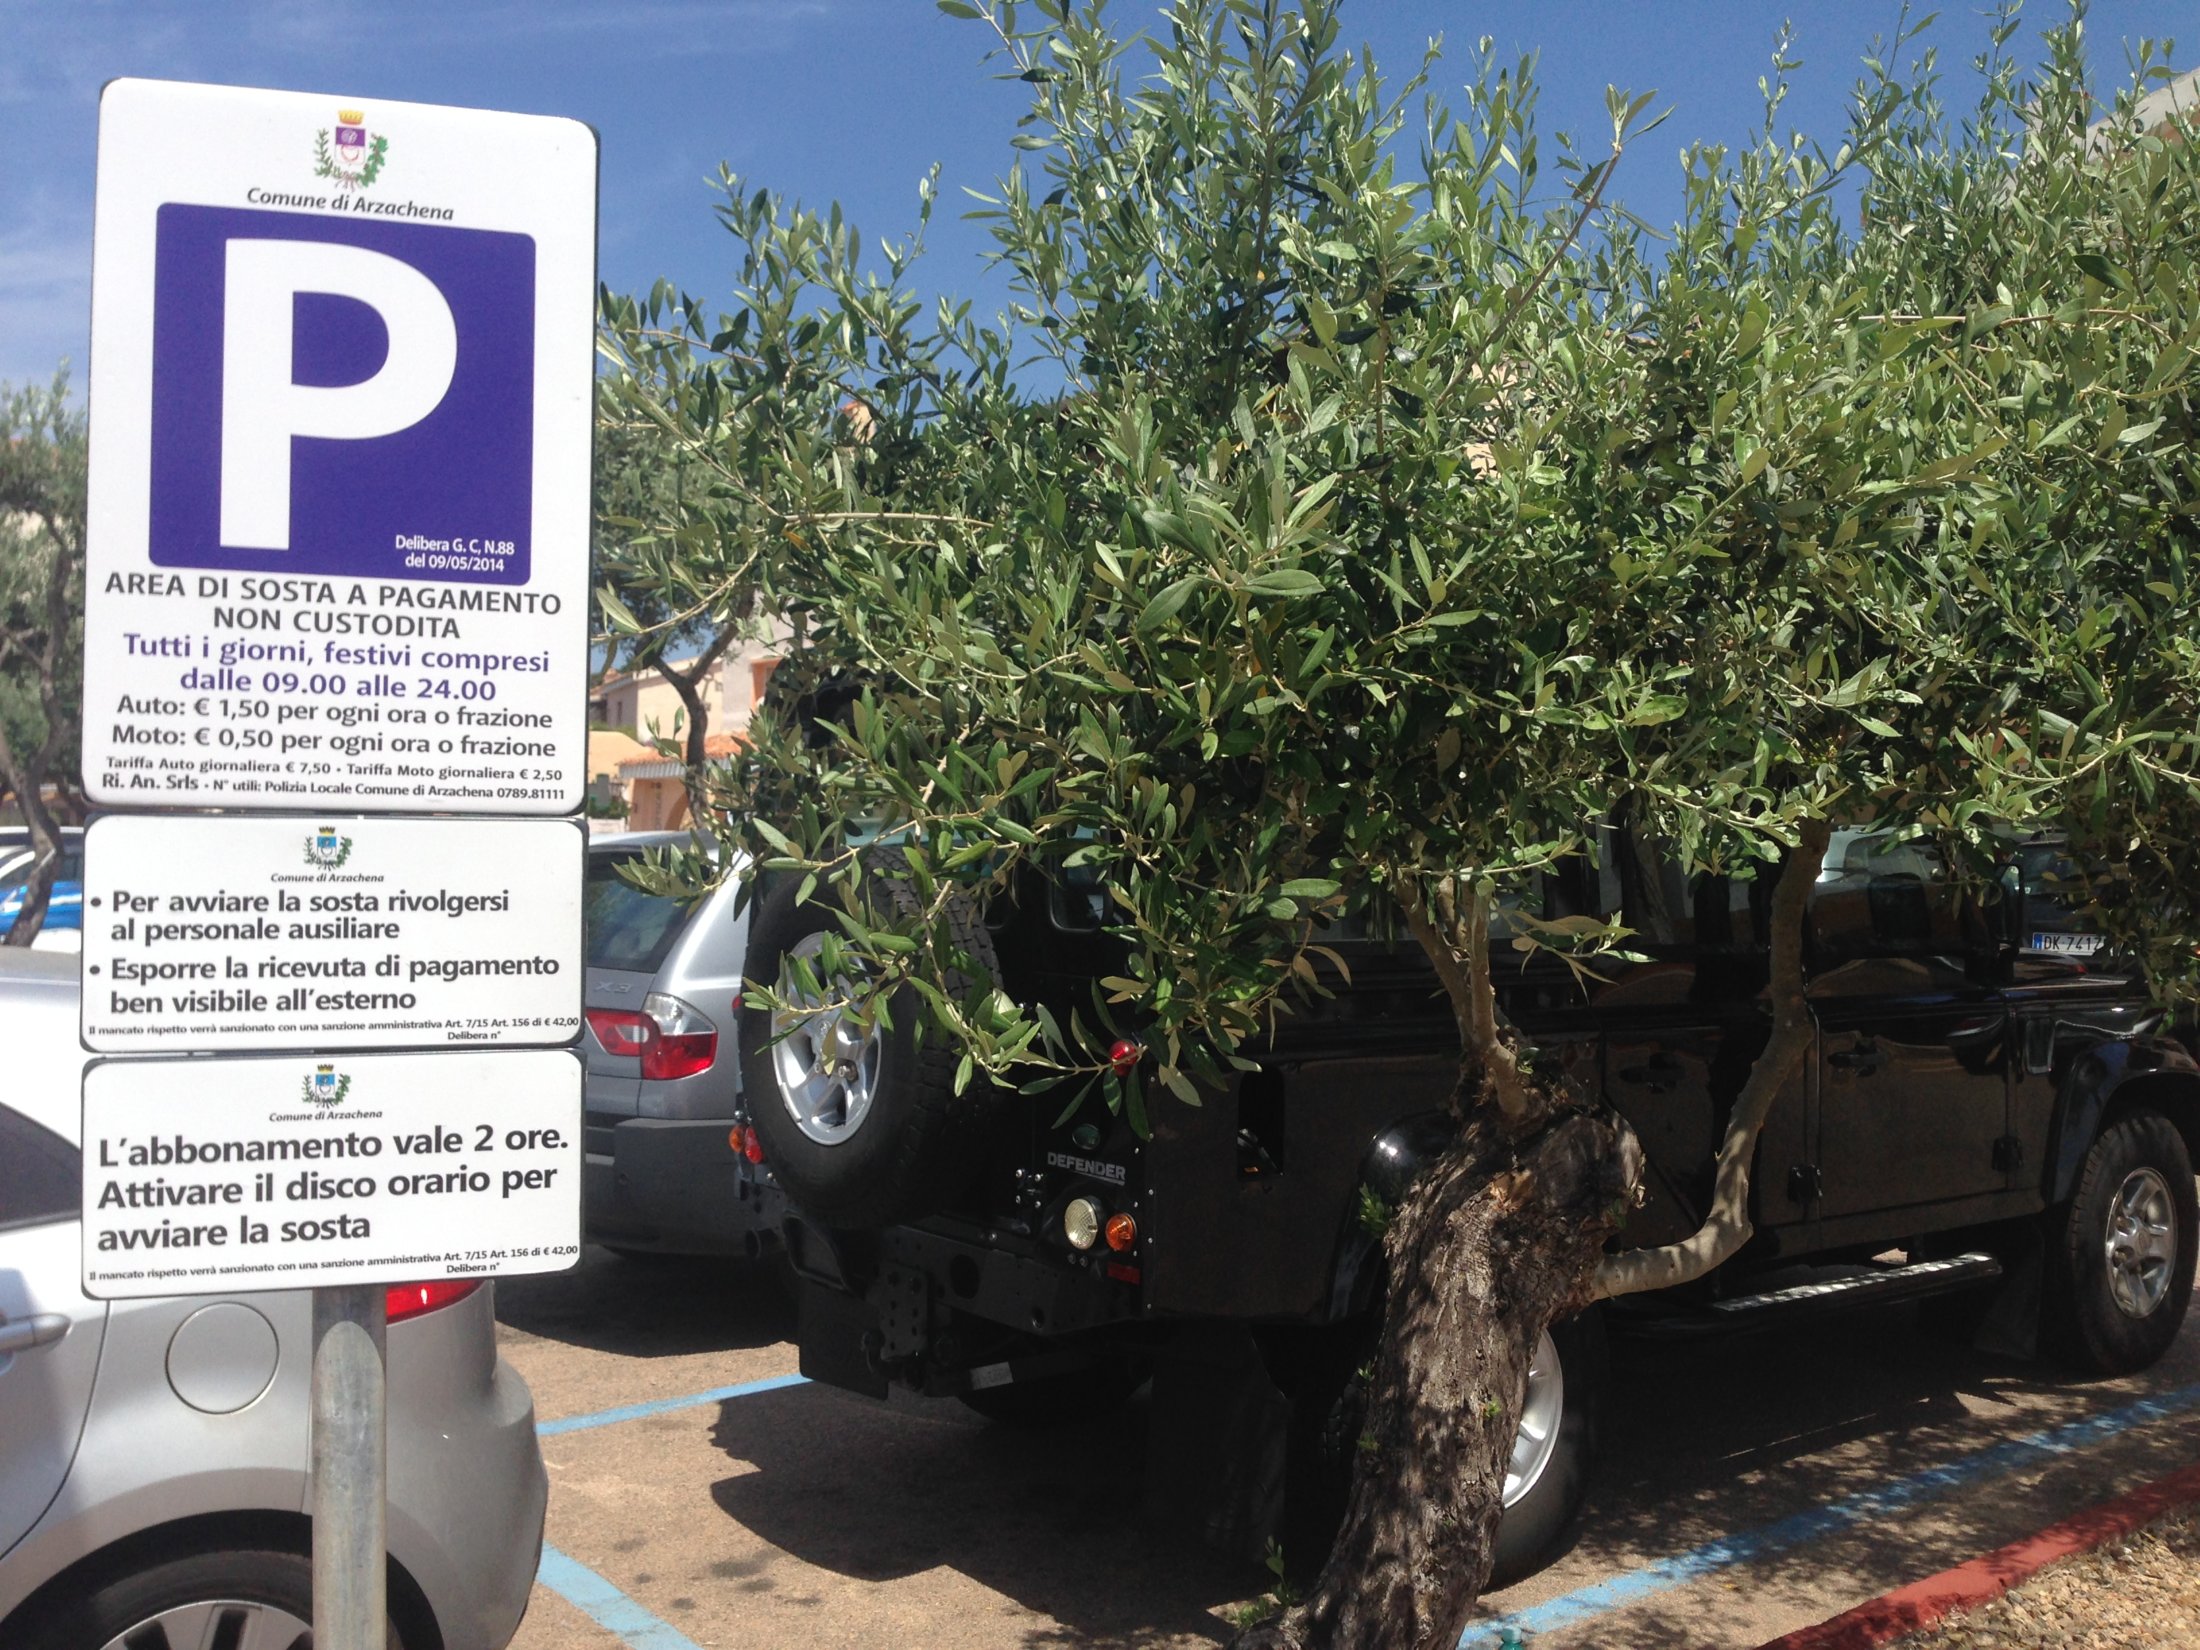 Parking Piazzetta degli ulivi Porto Cervo